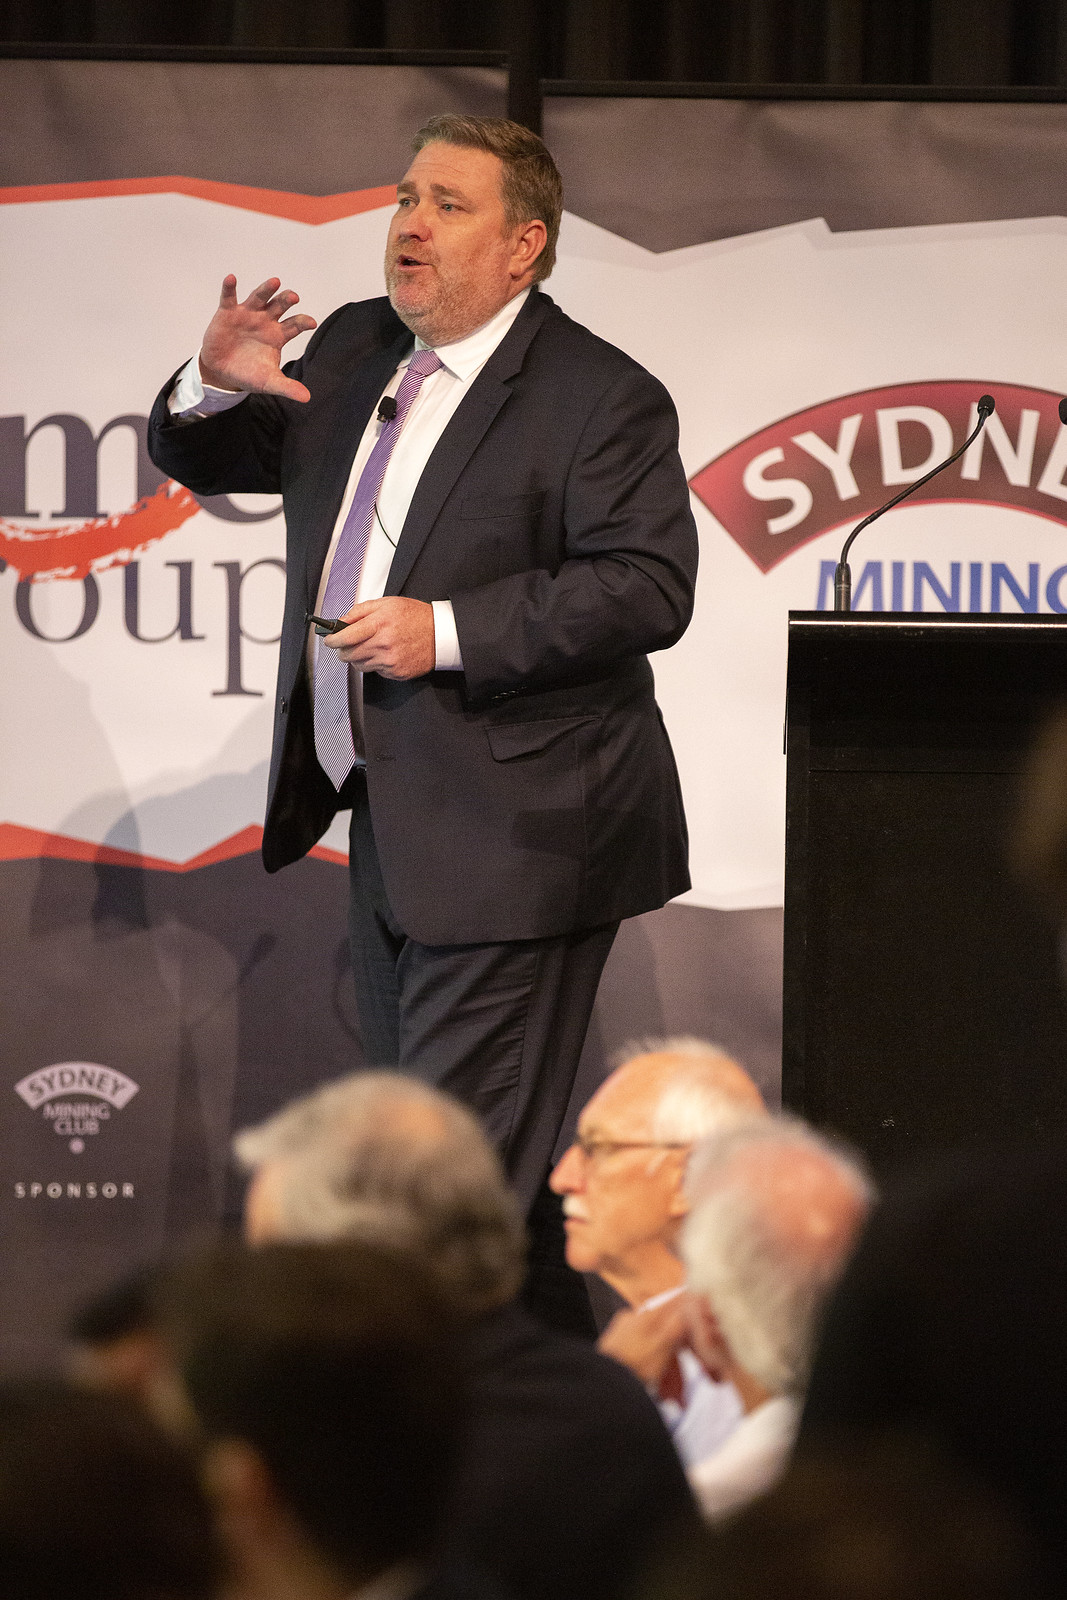 Sydney Mining Club – 7 February 2019